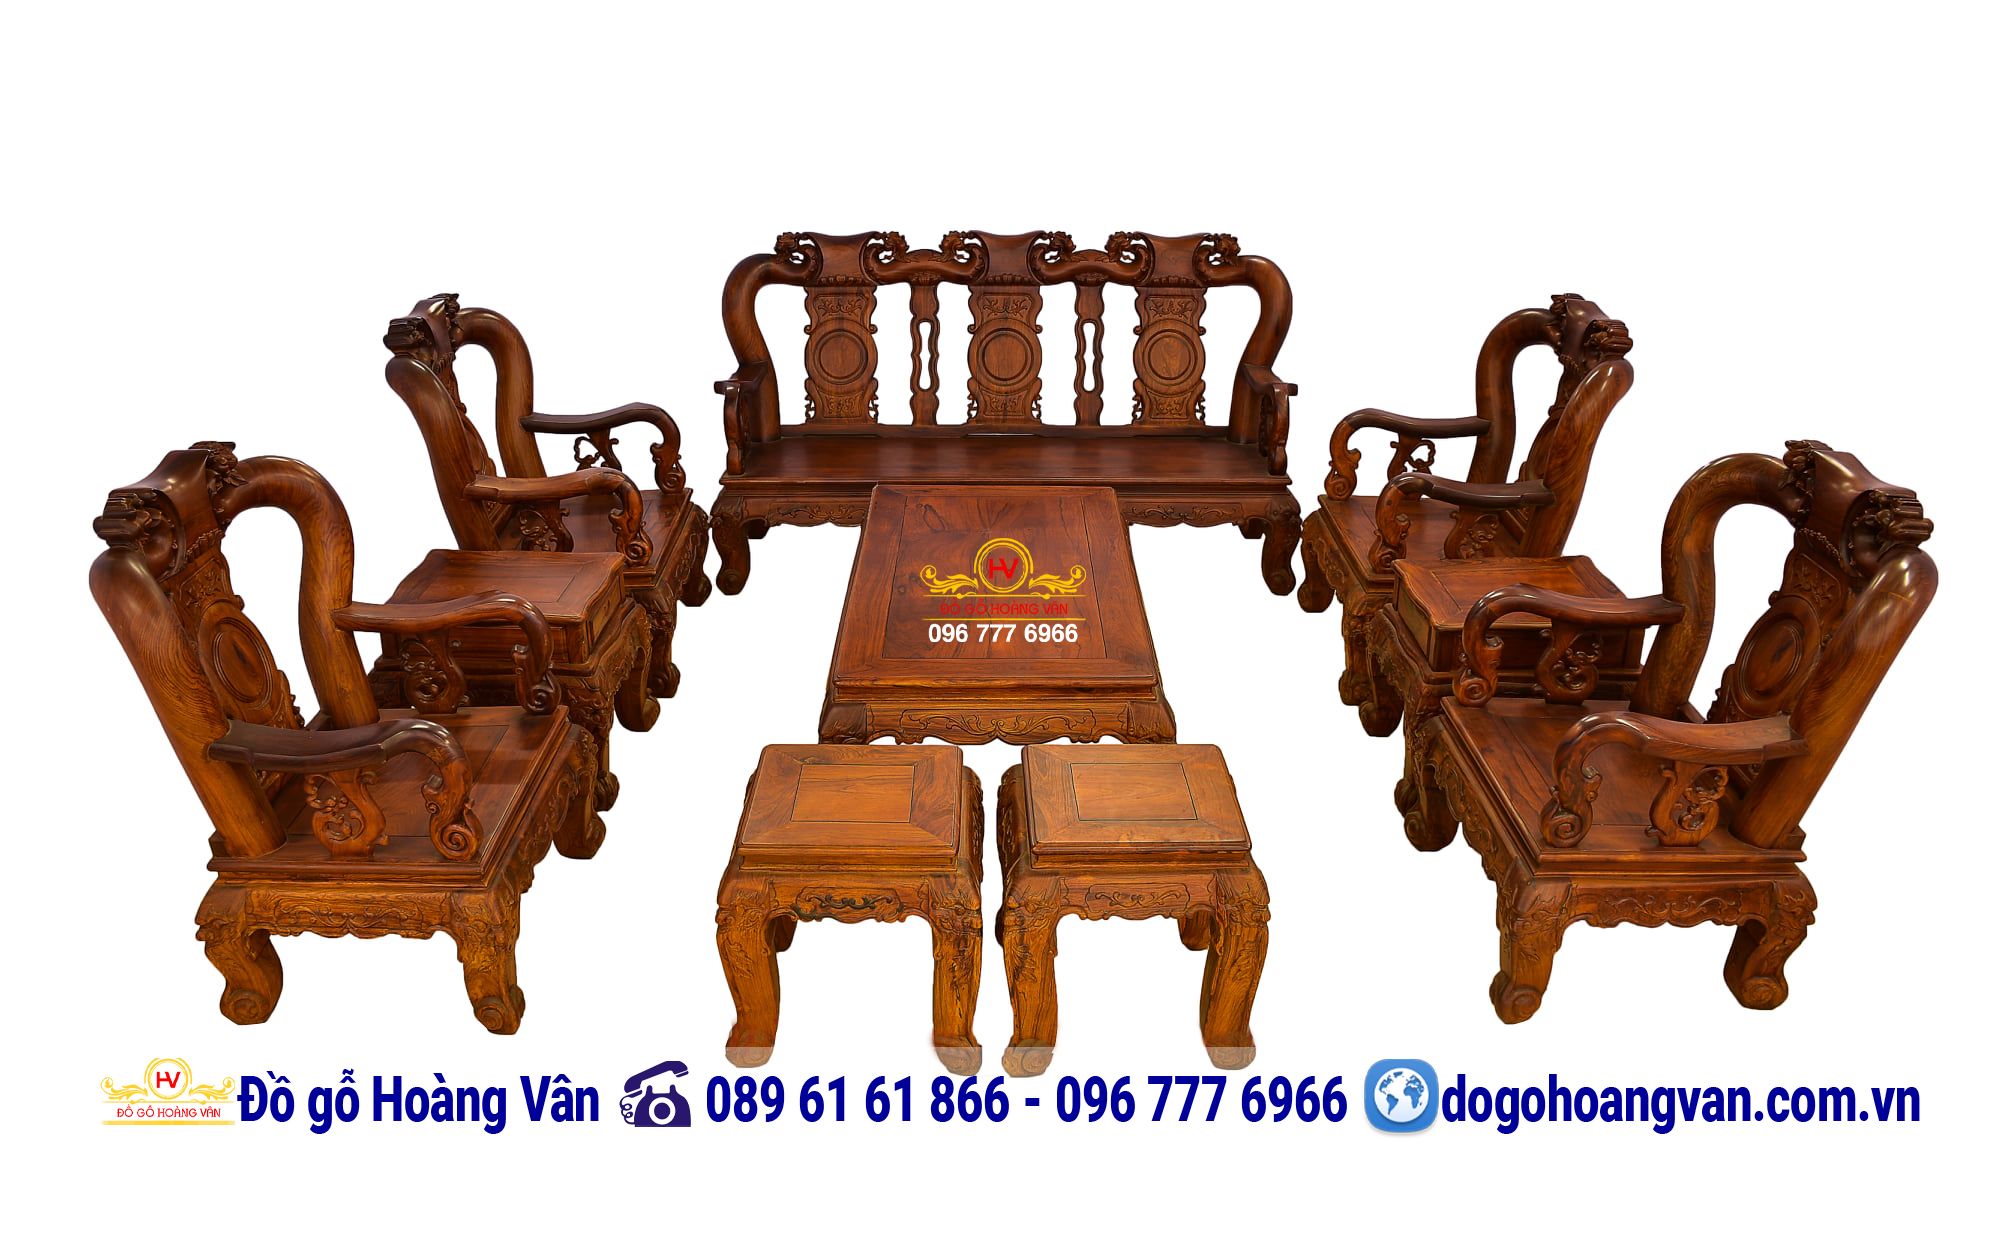 Bộ Bàn Ghế Gỗ Hương Đẹp Giá Rẻ Tay Nghệ C12cm BG102 – Đồ gỗ Hoàng Vân